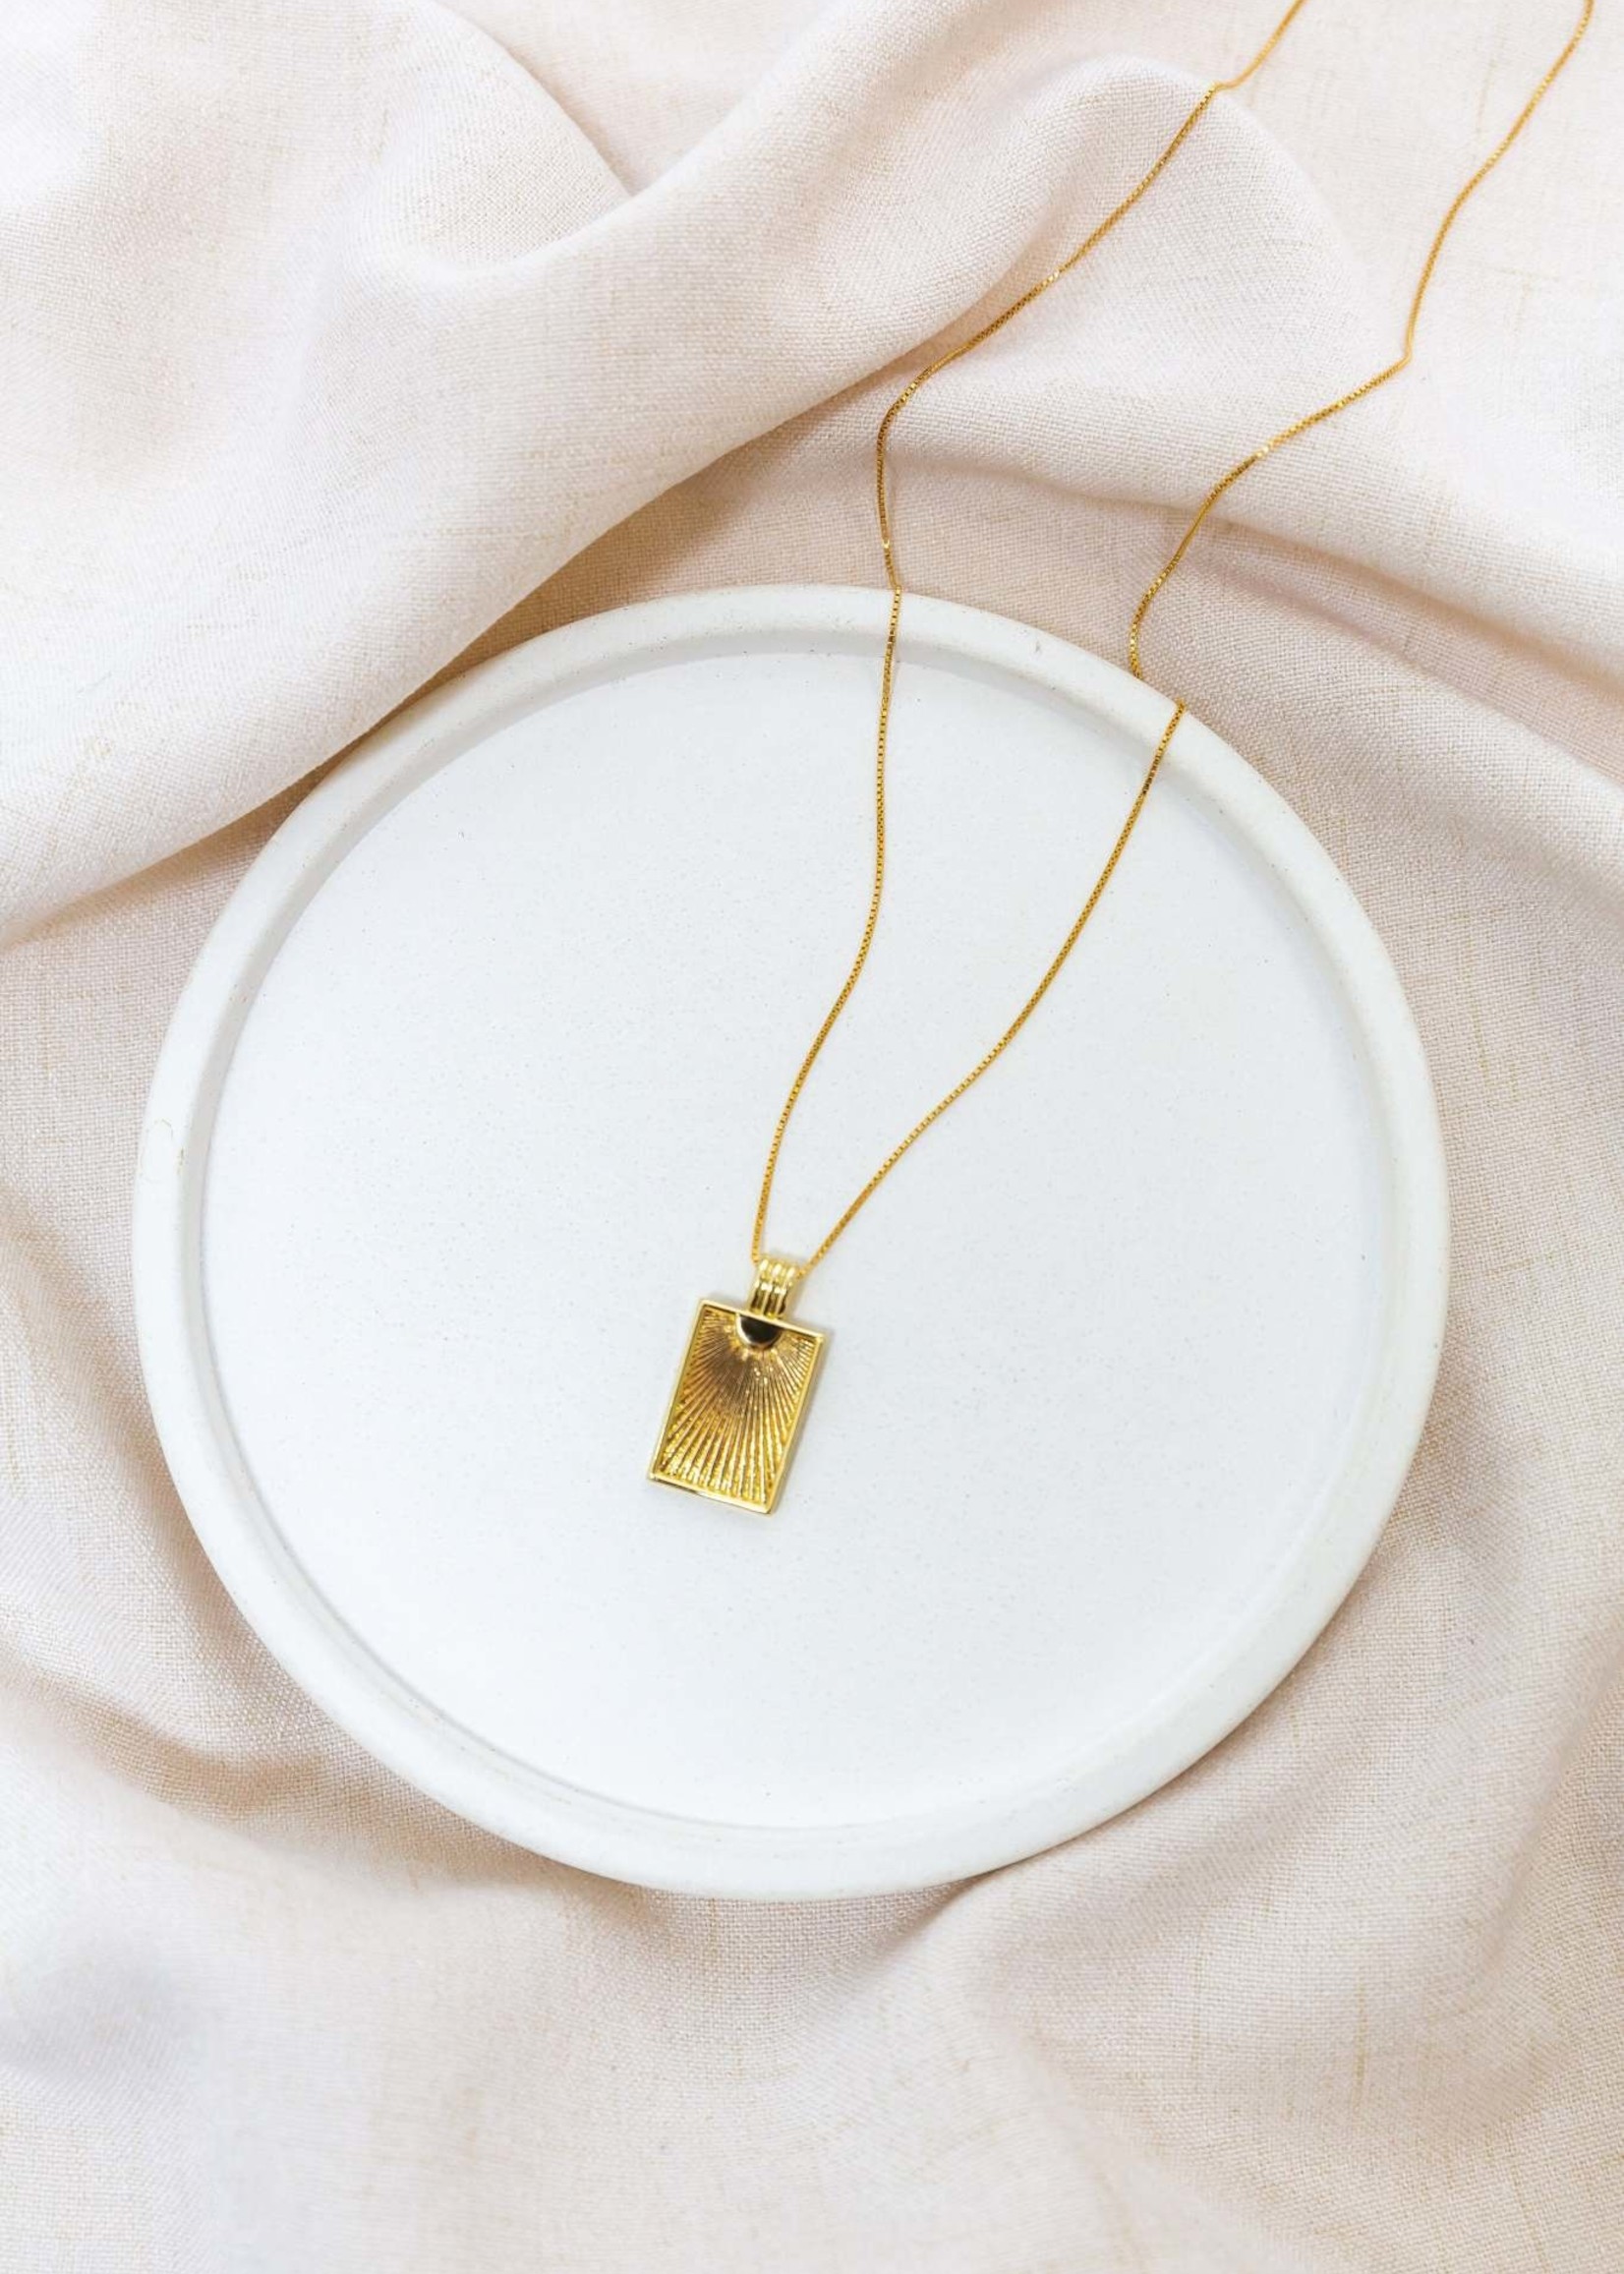 ELIZABETH. LYN Harvest Necklace, 24" 14K Gold Filled